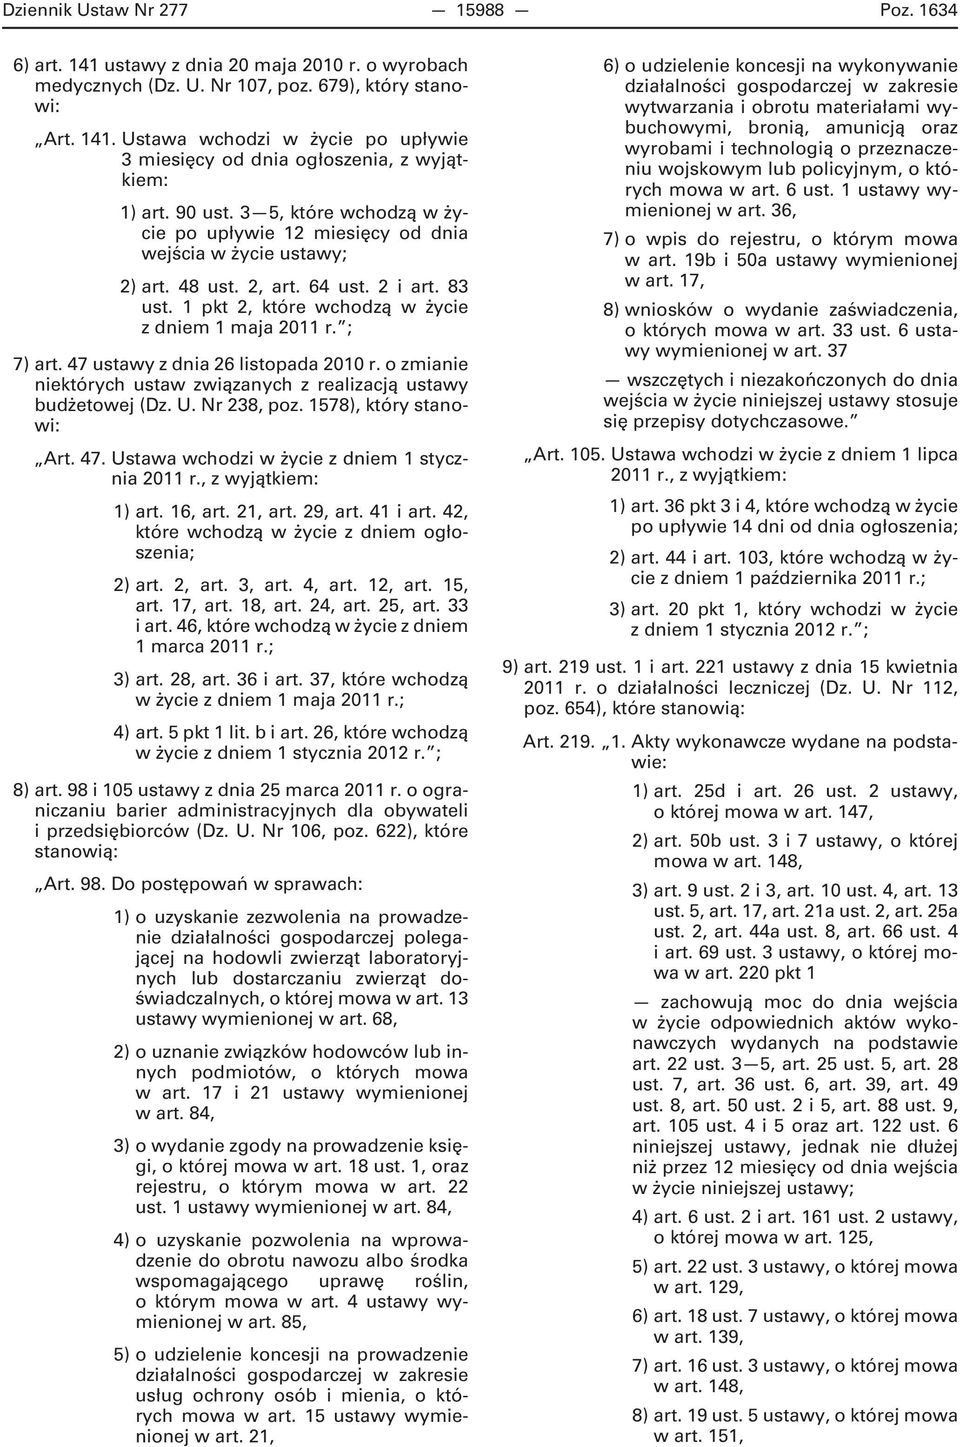 ; 7) art. 47 ustawy z dnia 26 listopada 2010 r. o zmianie niektórych ustaw związanych z realizacją ustawy budżetowej (Dz. U. Nr 238, poz. 1578), który stanowi: Art. 47. Ustawa wchodzi w życie z dniem 1 stycznia 2011 r.